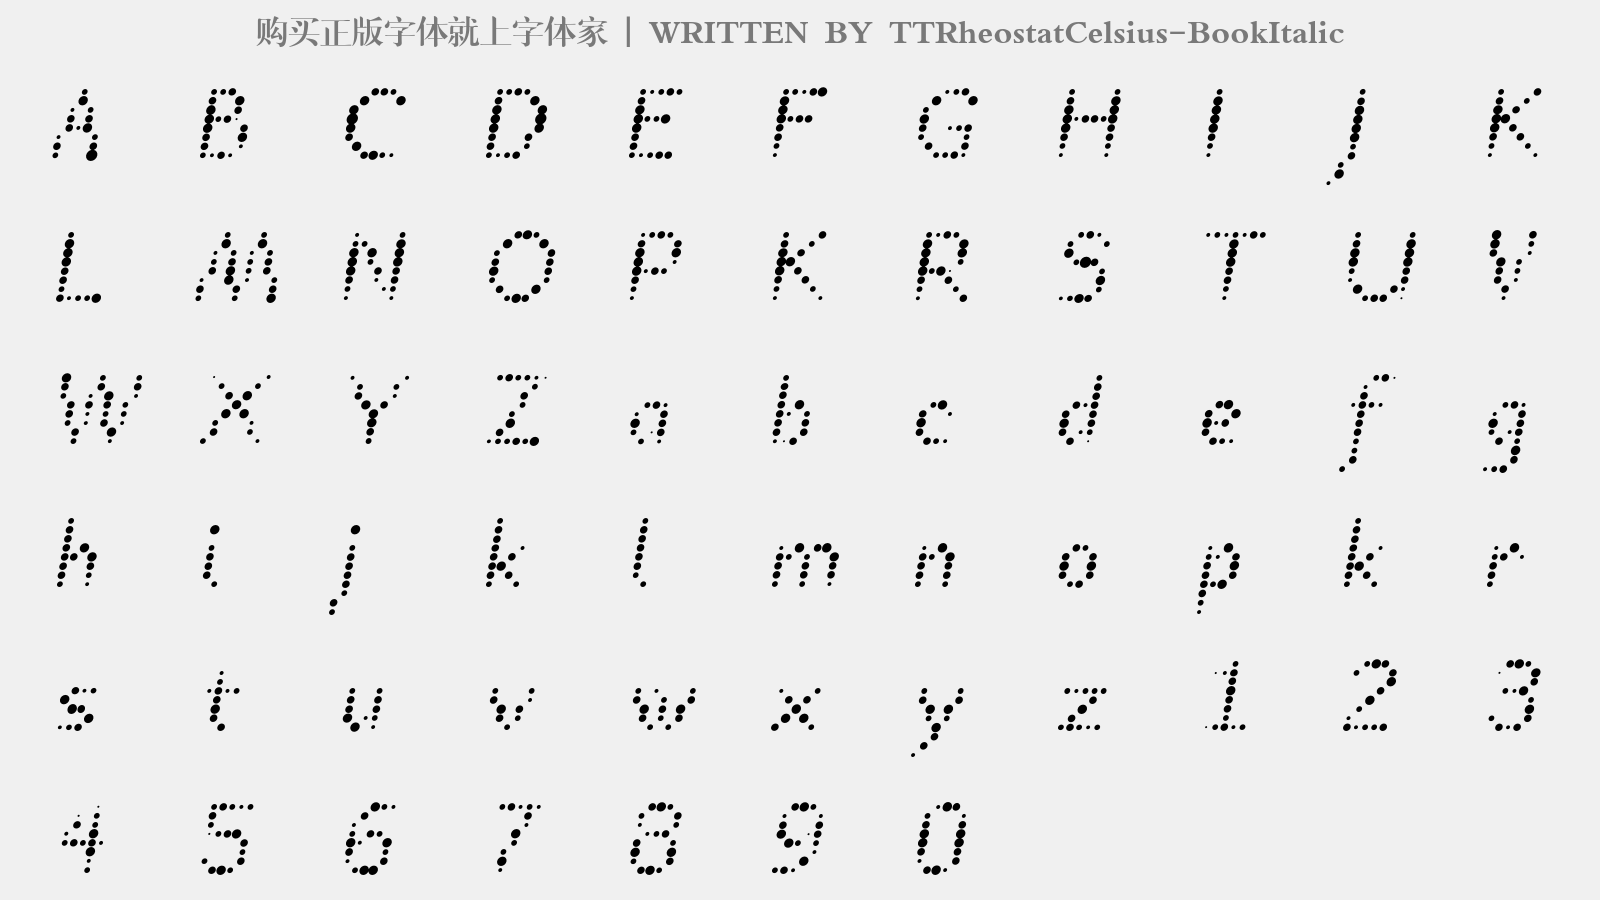 TTRheostatCelsius-BookItalic - 大写字母/小写字母/数字